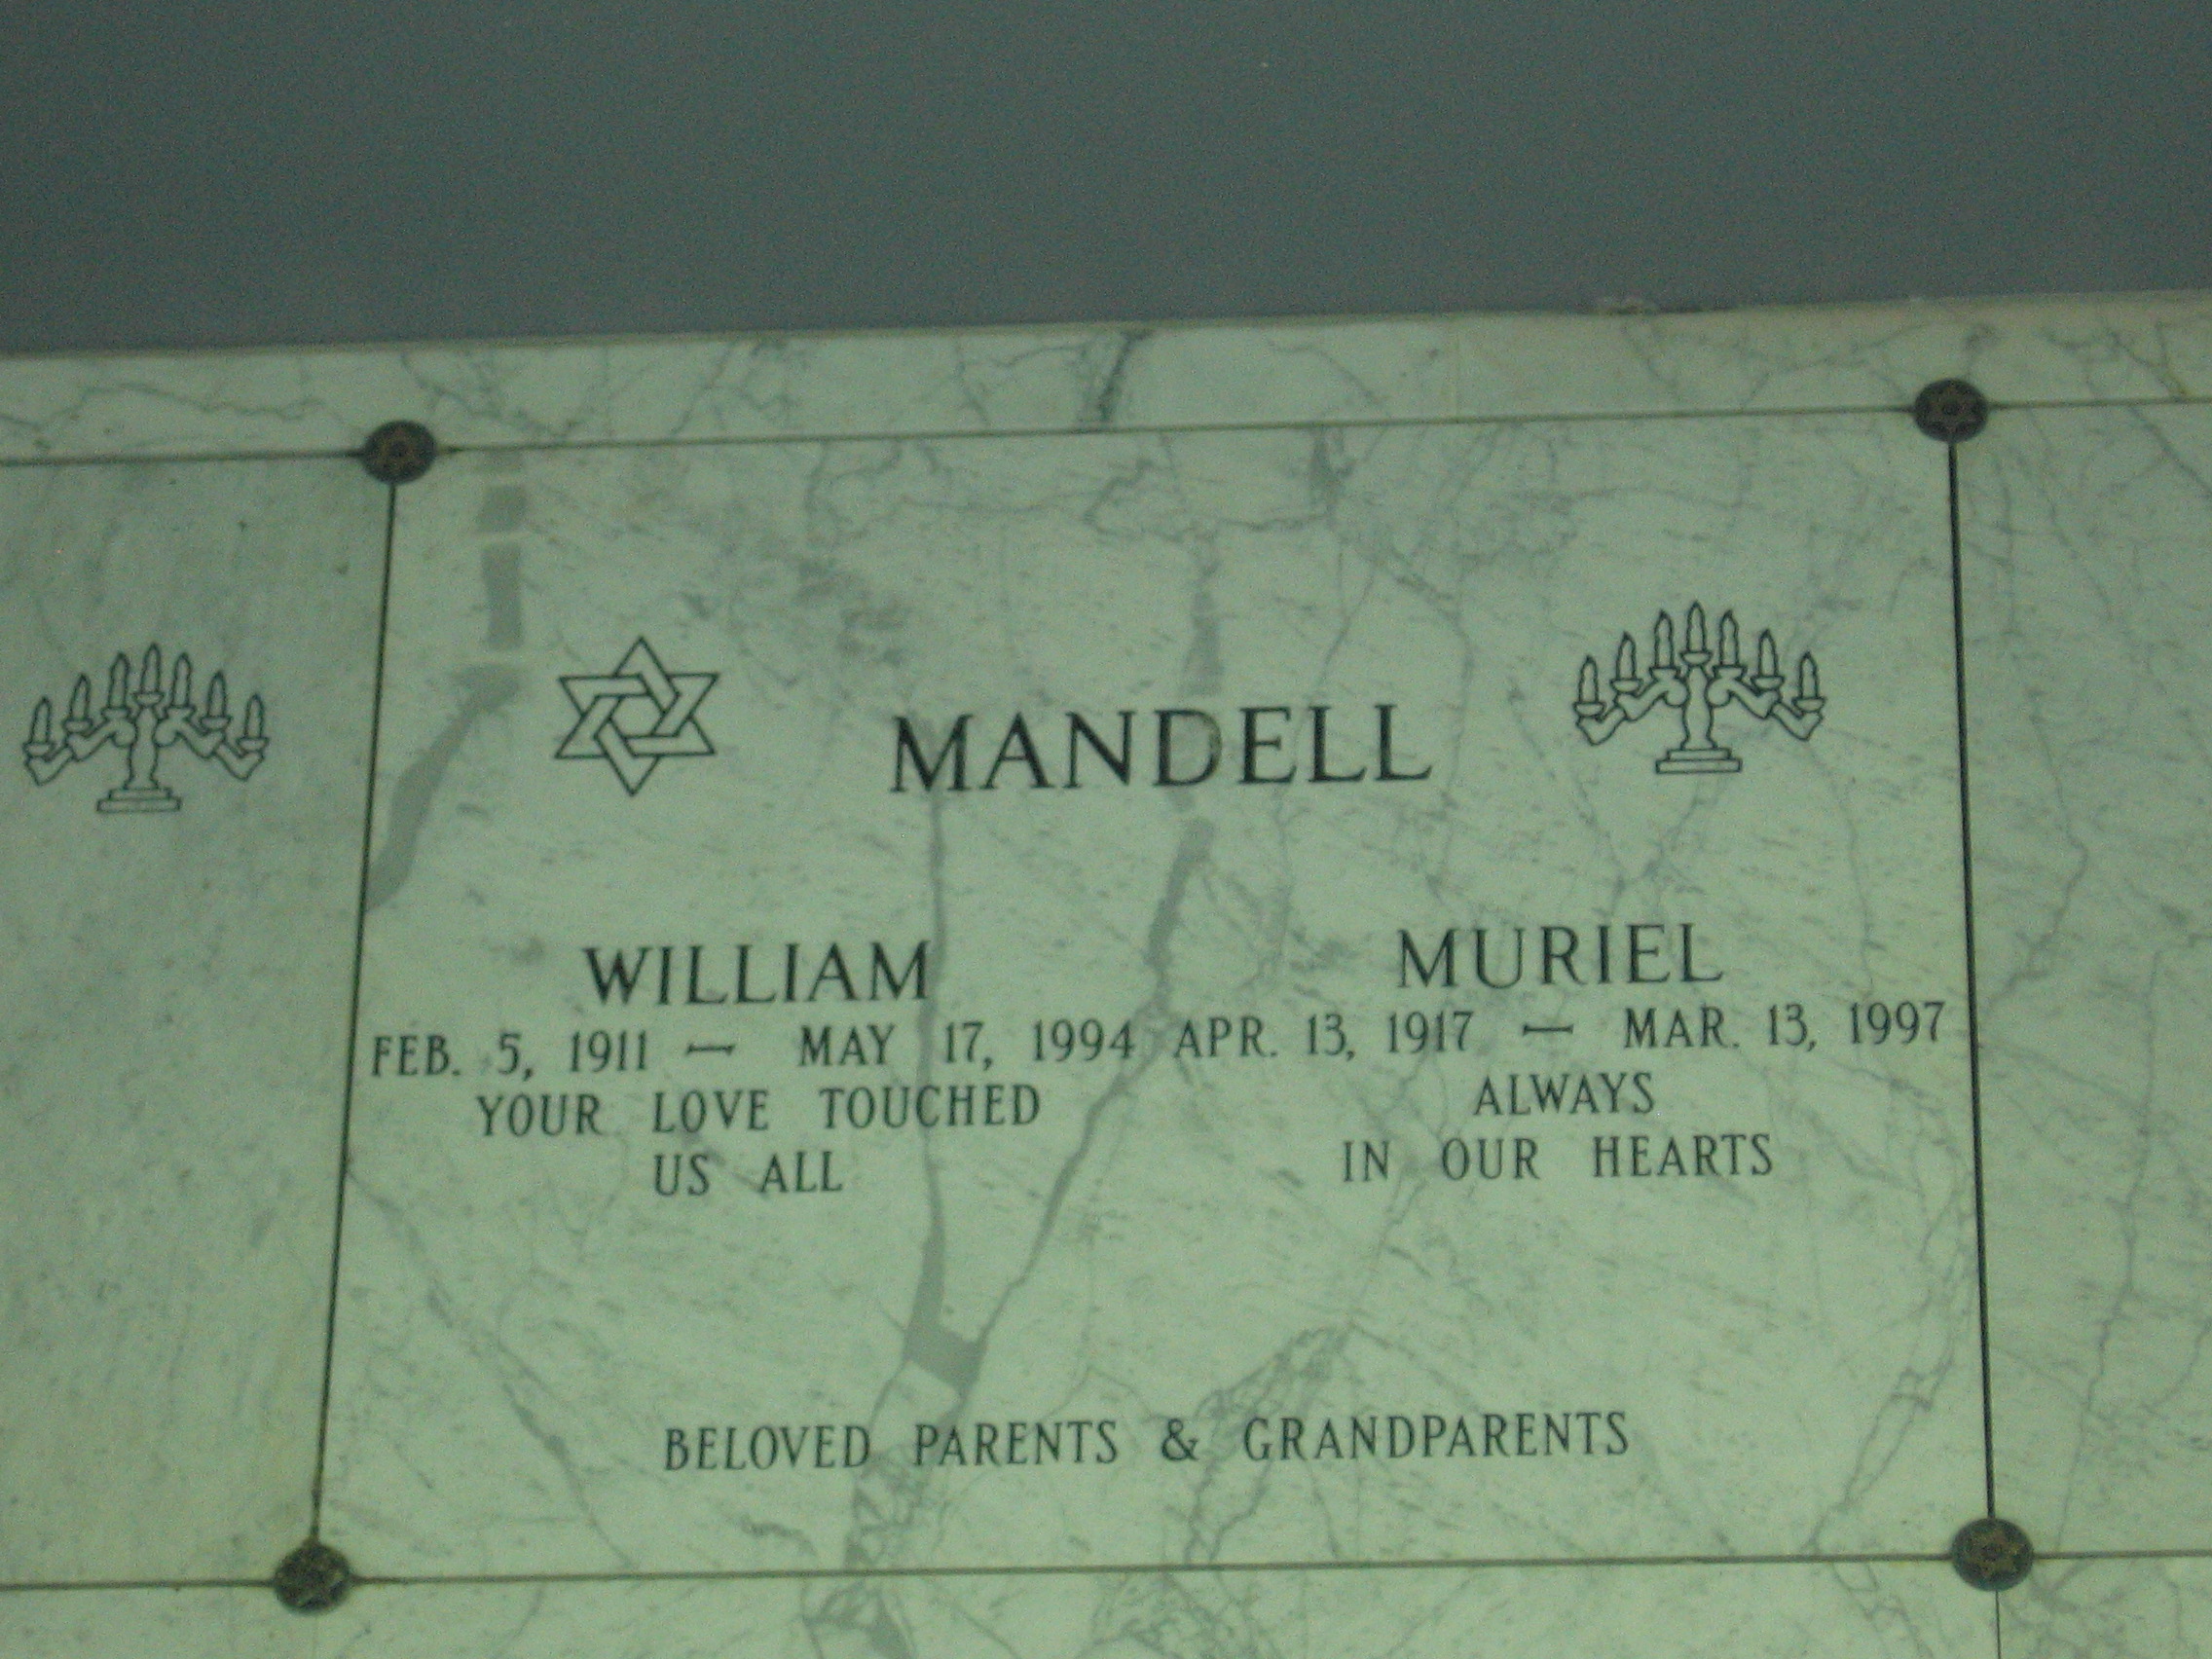 William Mandell